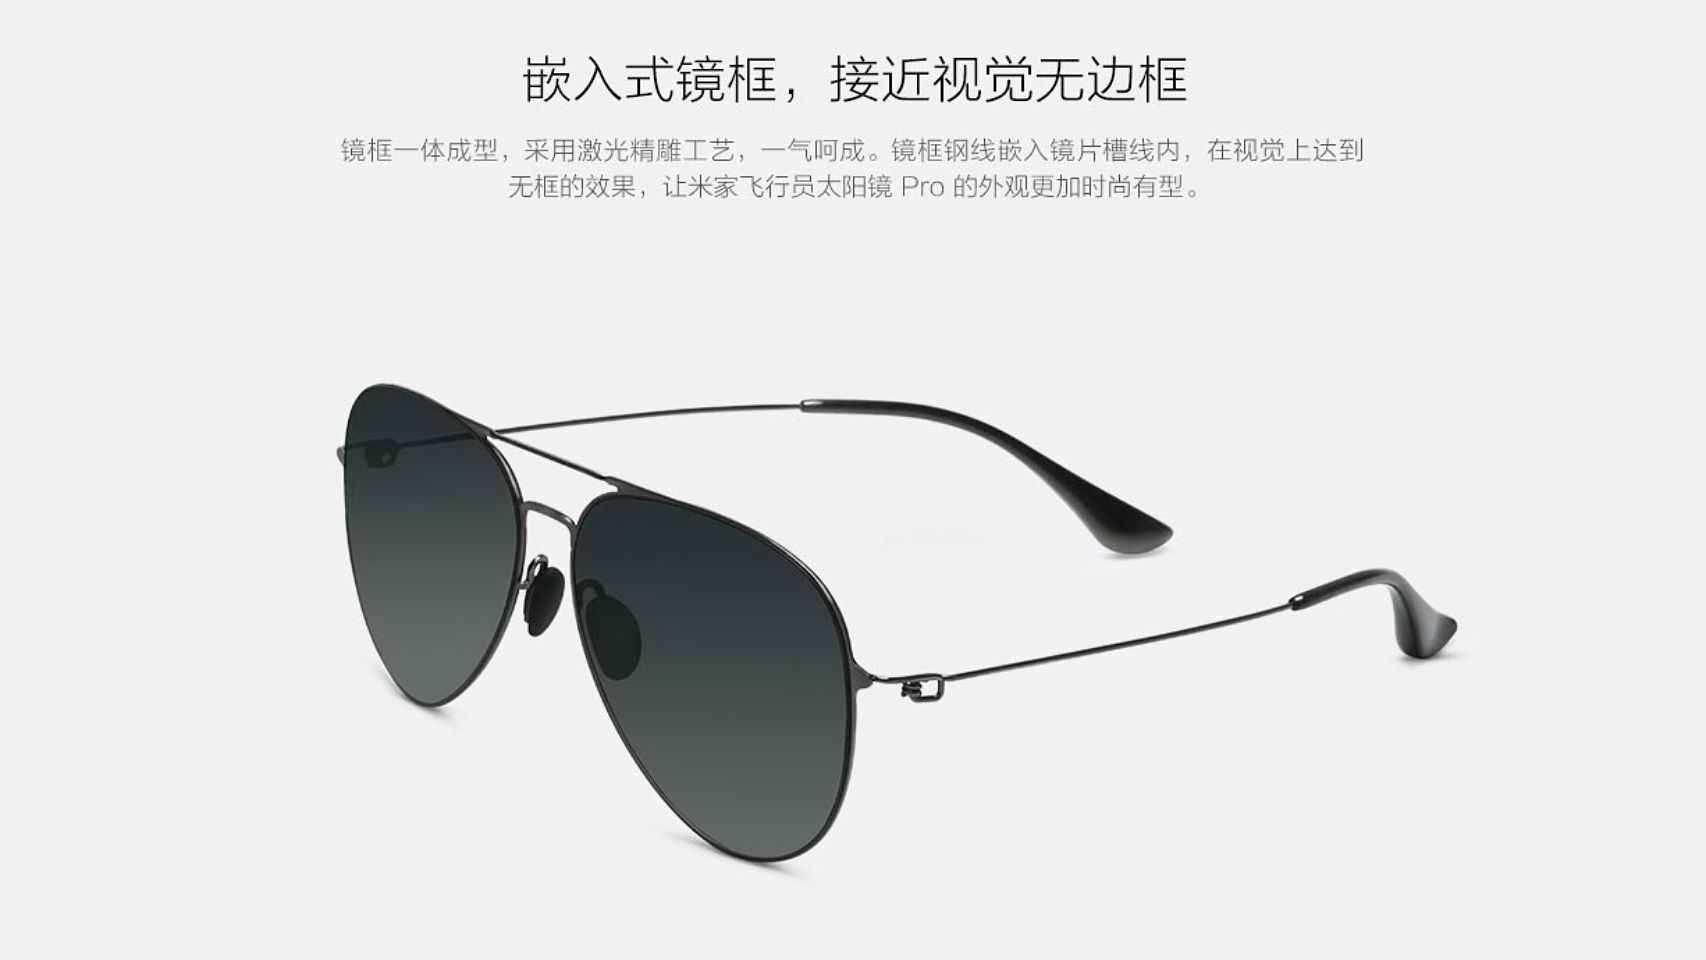 Gafas de sol de Xiaomi.